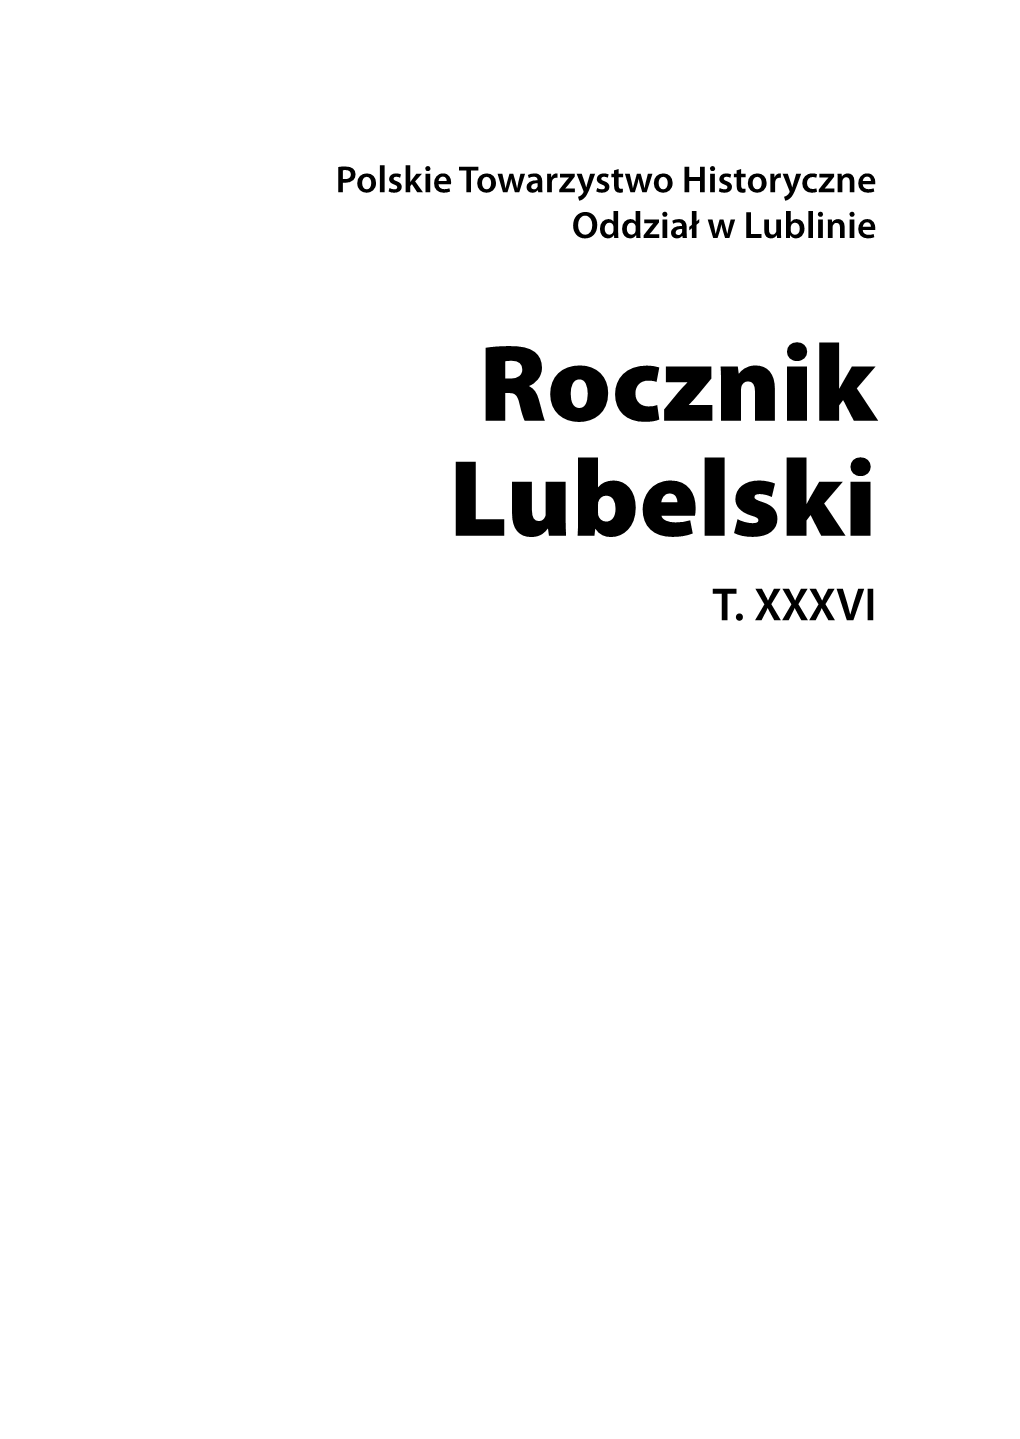 Rocznik Lubelski, T. XXXVI